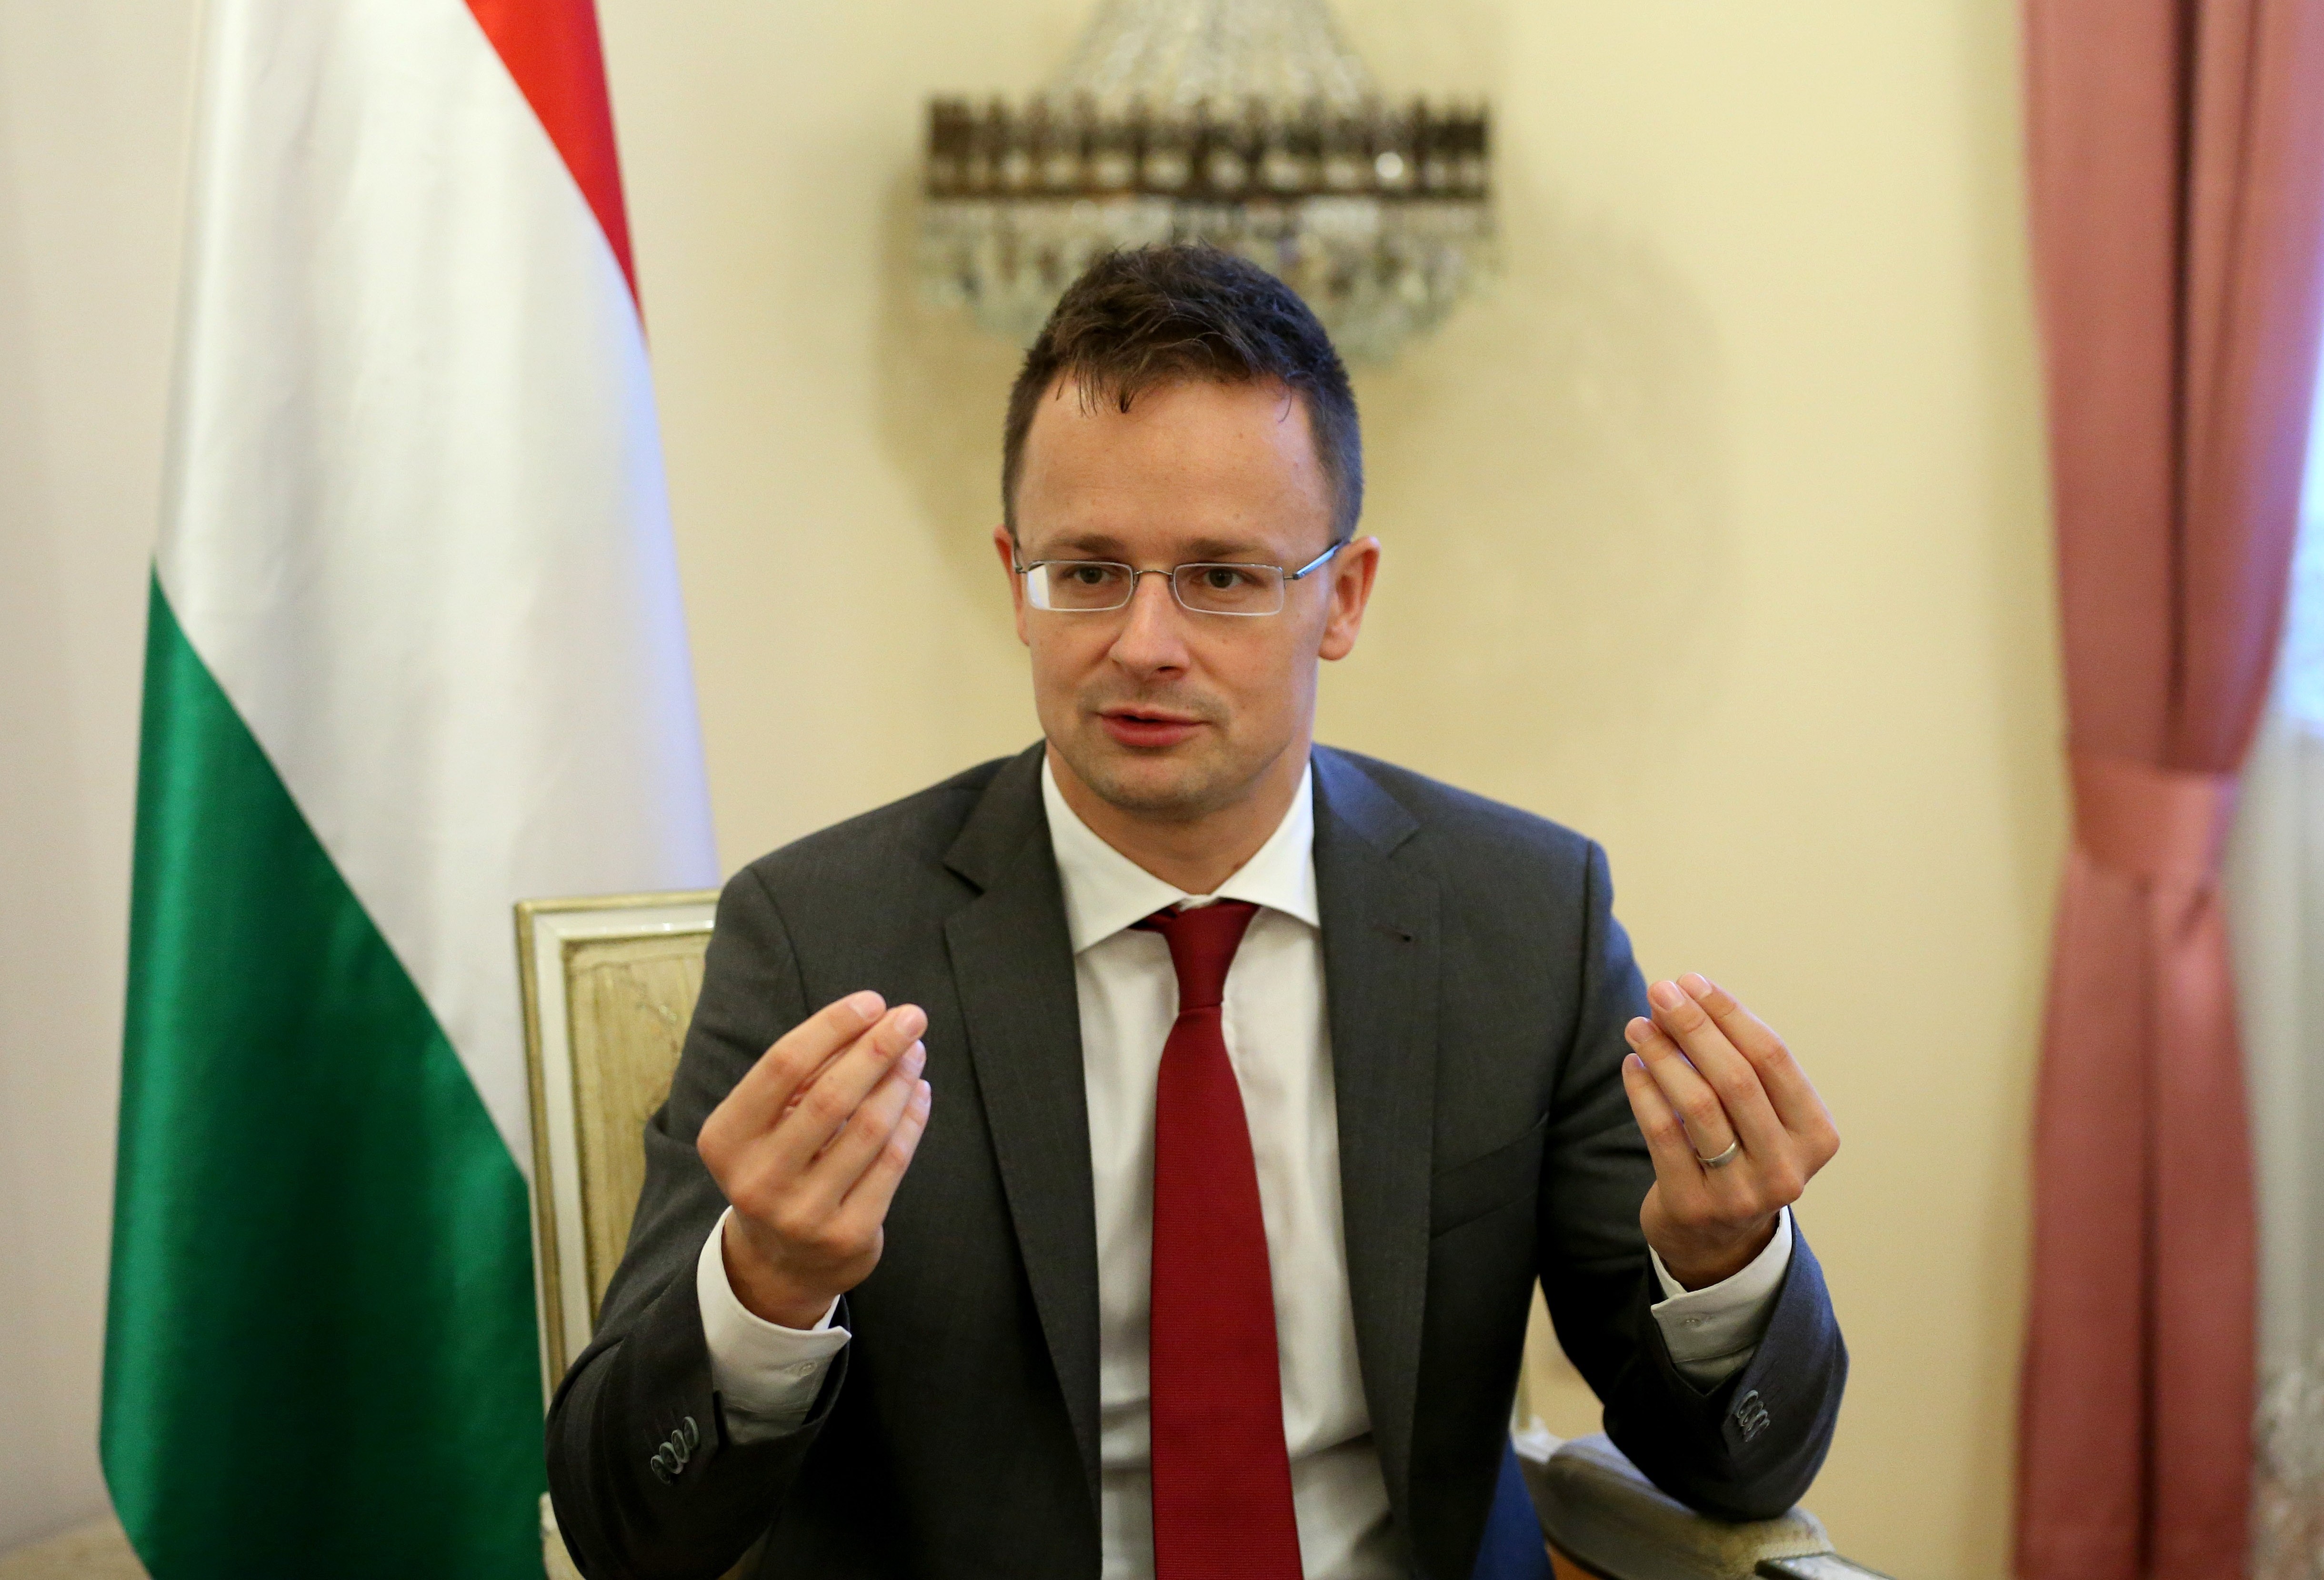 A magyar külügy bekérette az amerikai és a német nagykövetség ügyvivőjét, mert kiálltak a CEU mellett